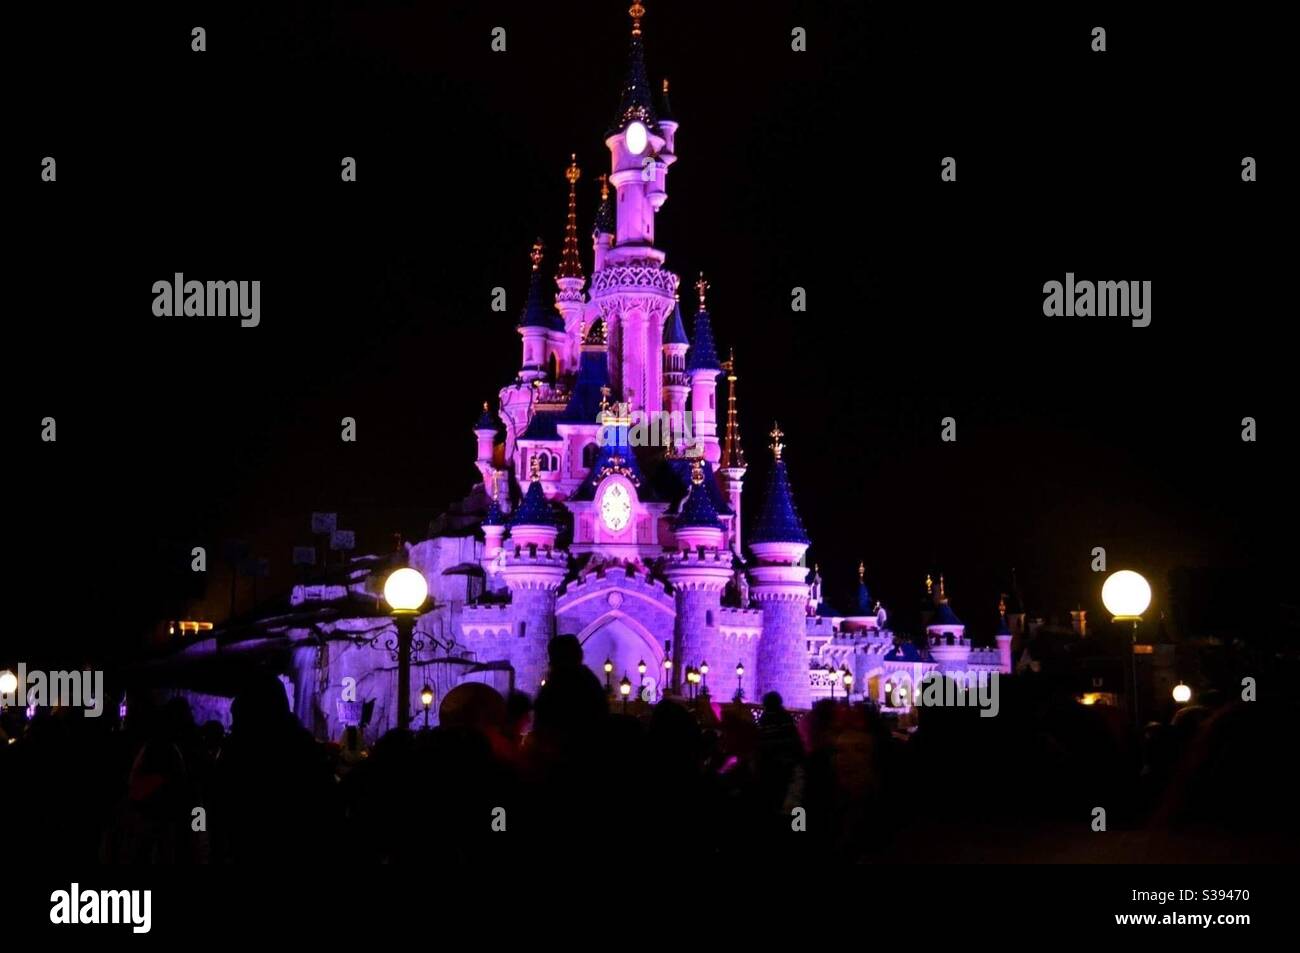 Le château Disneyland Paris by night